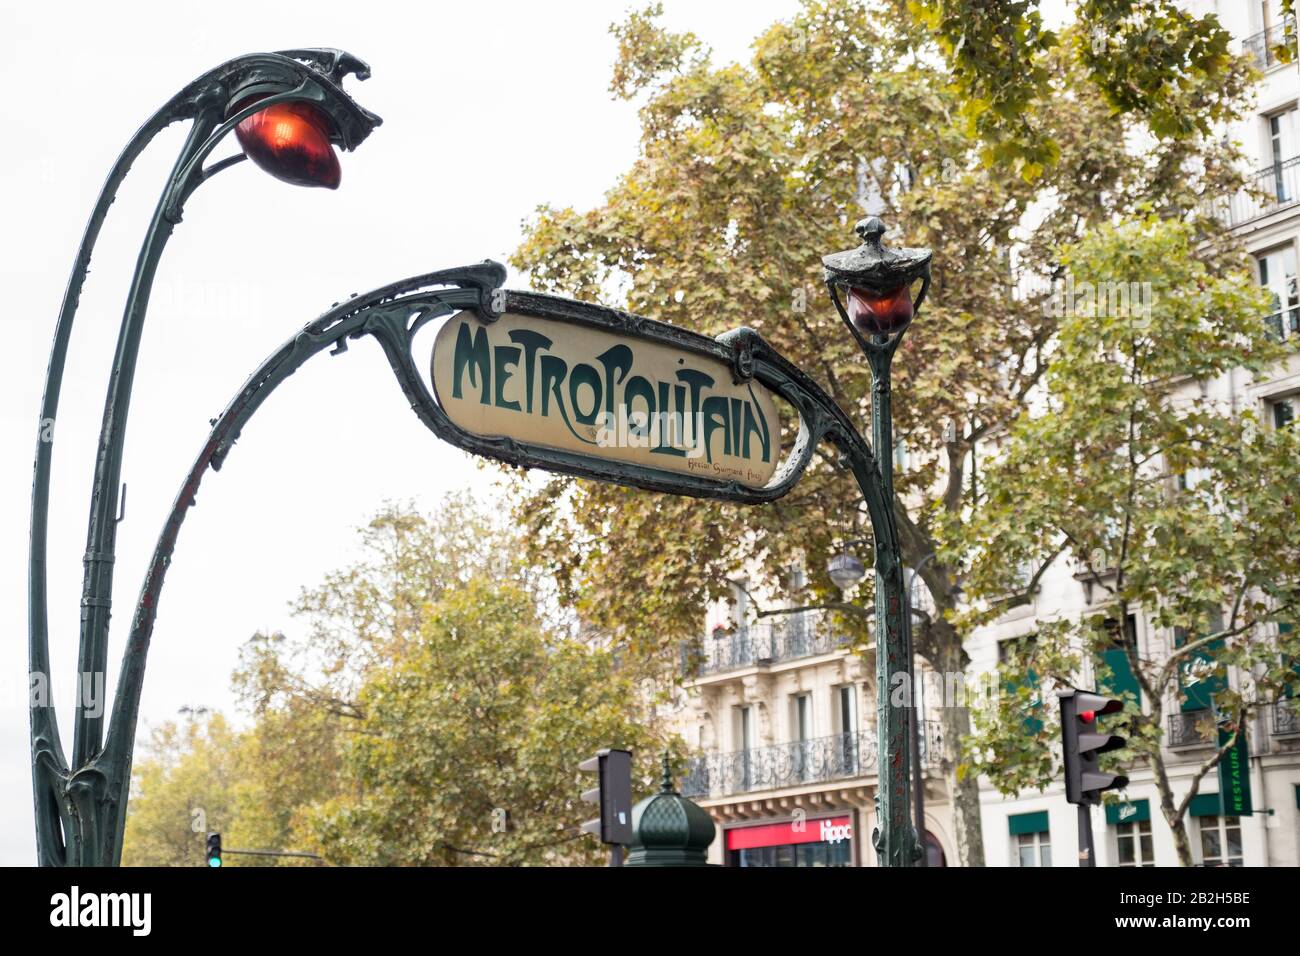 Signe métropolitain, Paris Banque D'Images